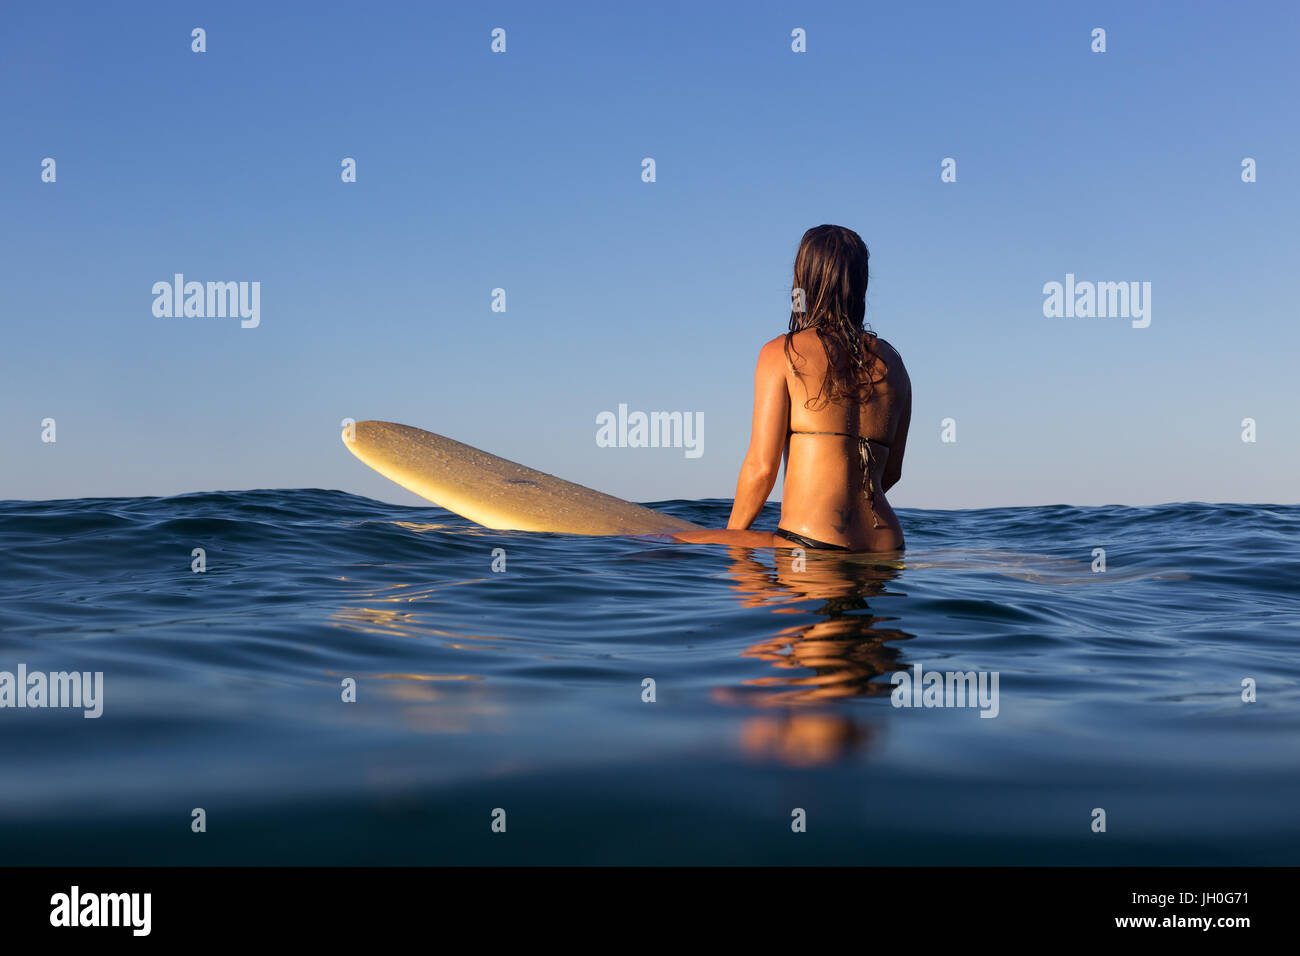 Un internaute est assise sur son bureau et attend une vague sur un océan calme vitreux en Australie. Banque D'Images